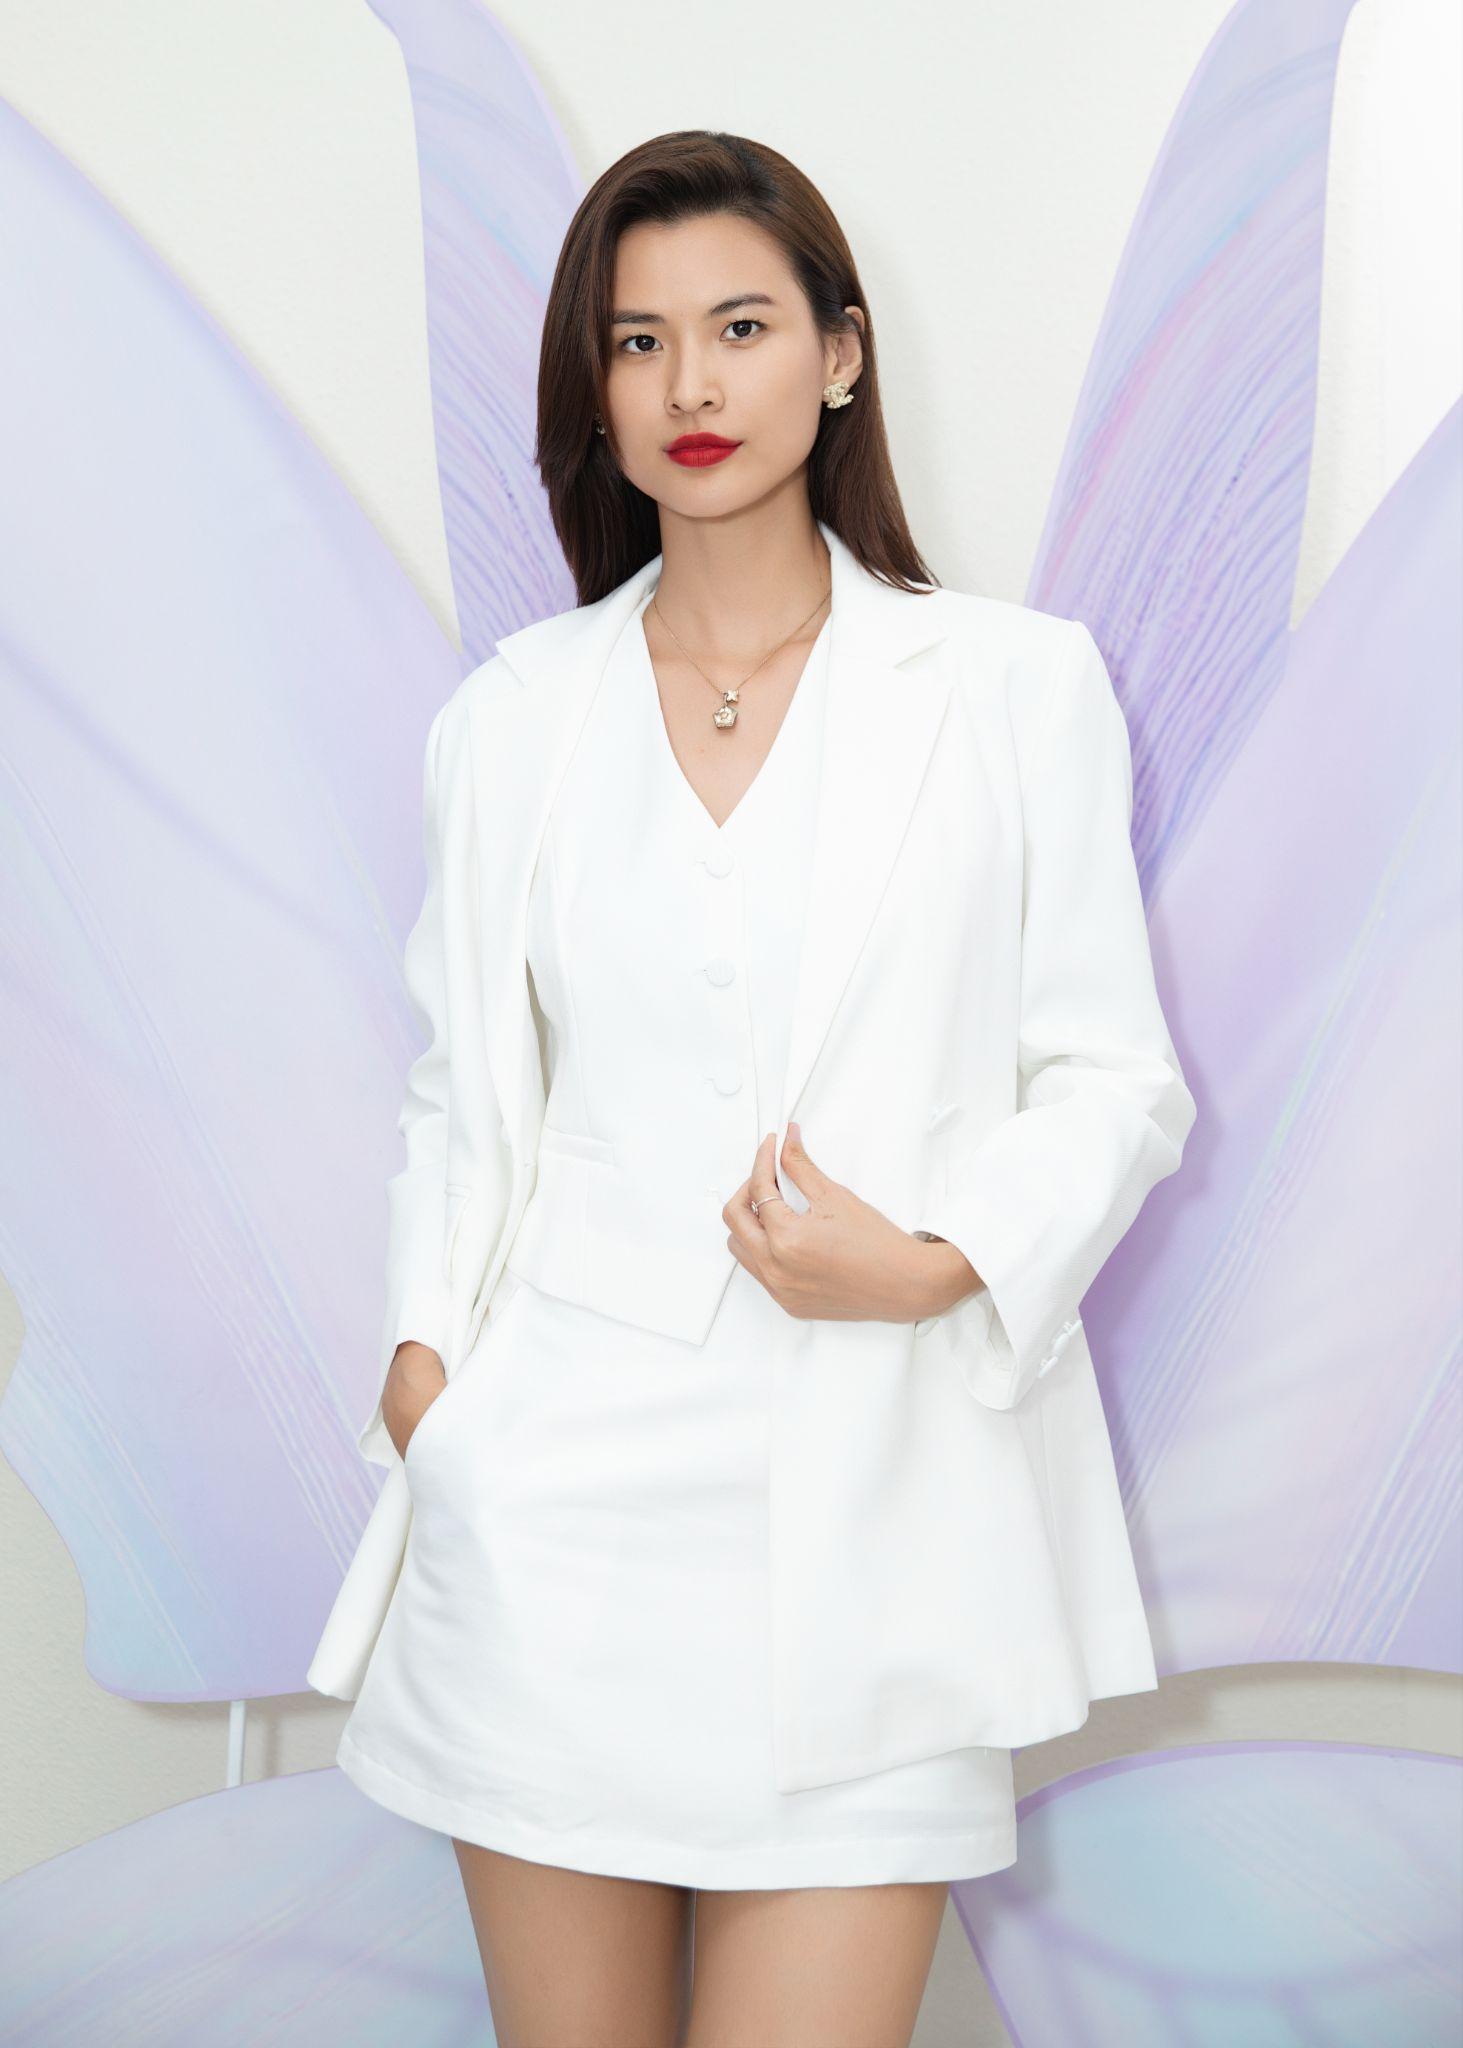 Cao Thiên Trang trở thành đại sứ thương hiệu thời trang MYAN - Ảnh 1.